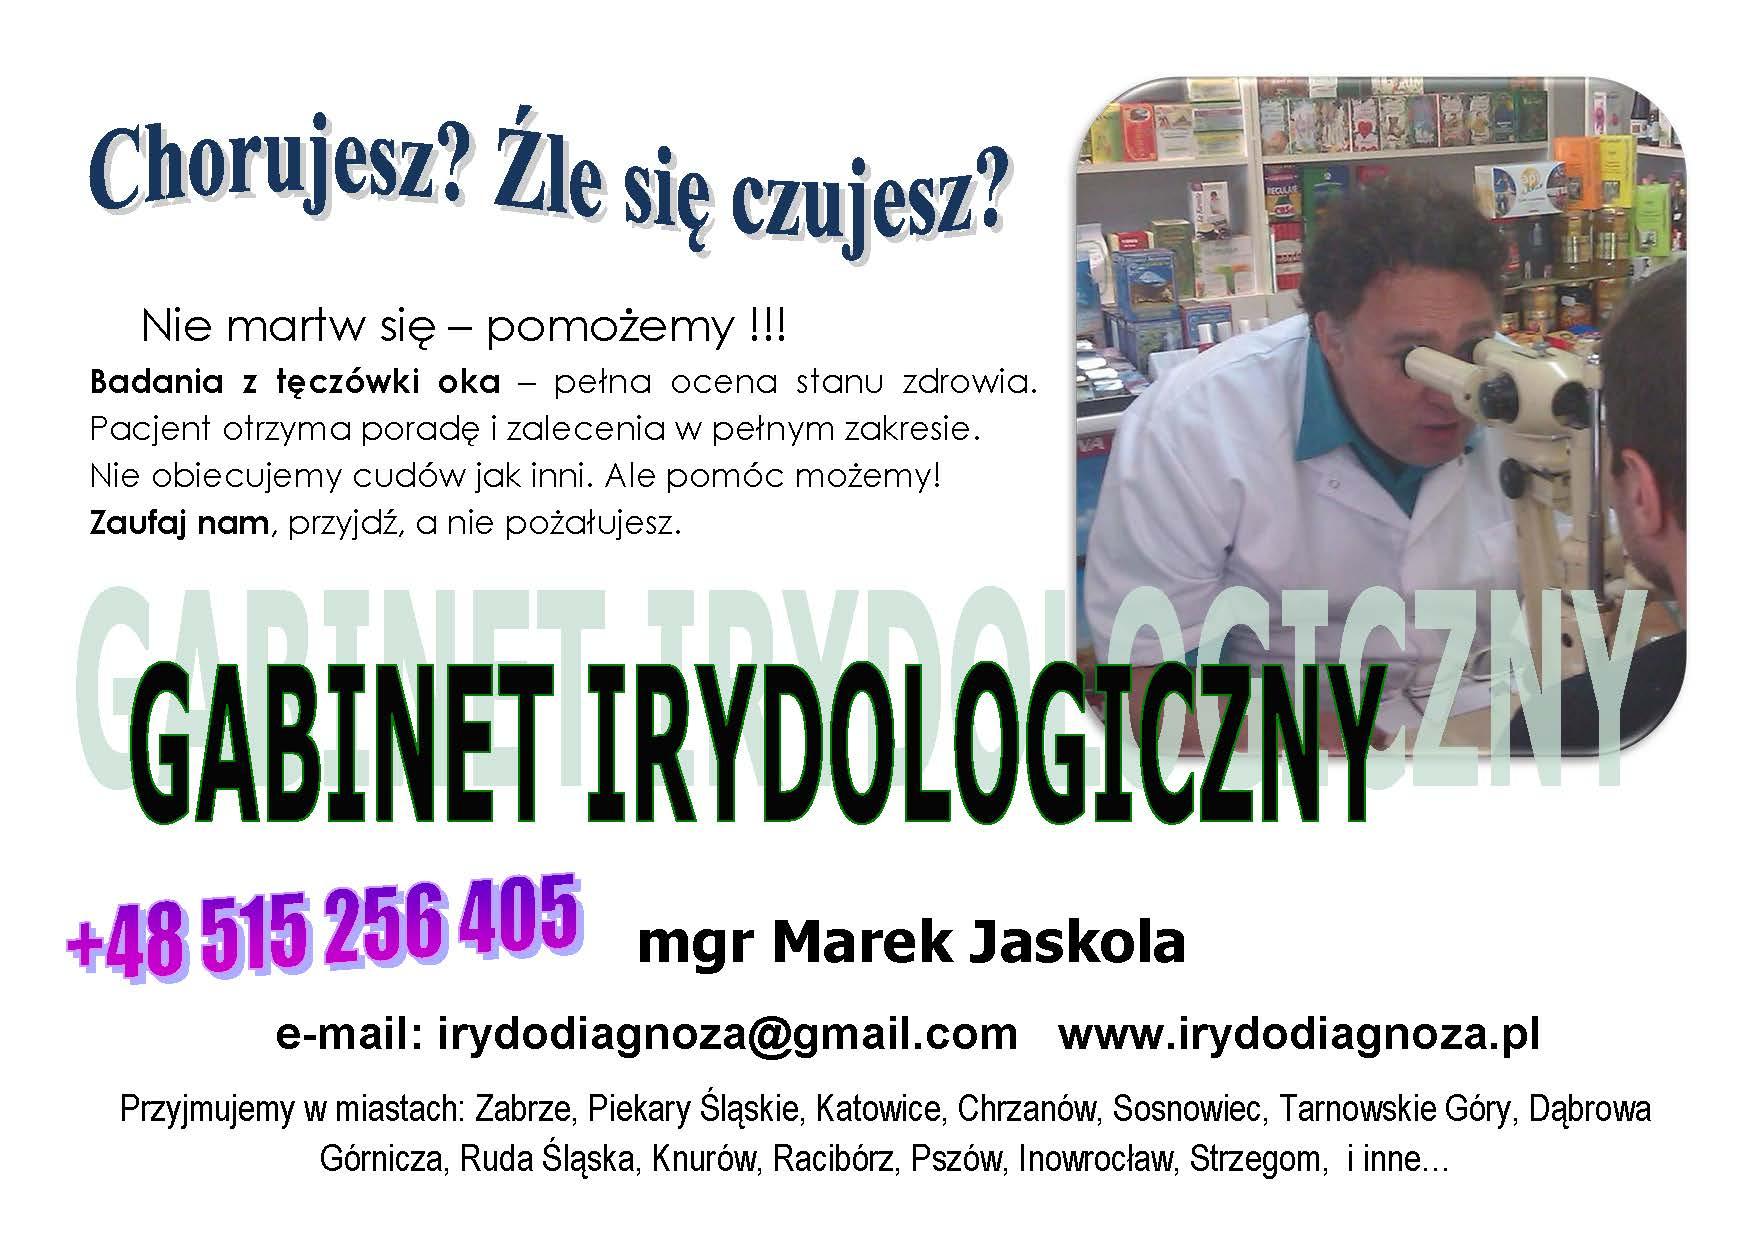 Irydologia, ziołolecznictwo, medycyna naturalna, Zabrze, Katowice, Inowrocław, Racibórz, Polska, śląskie